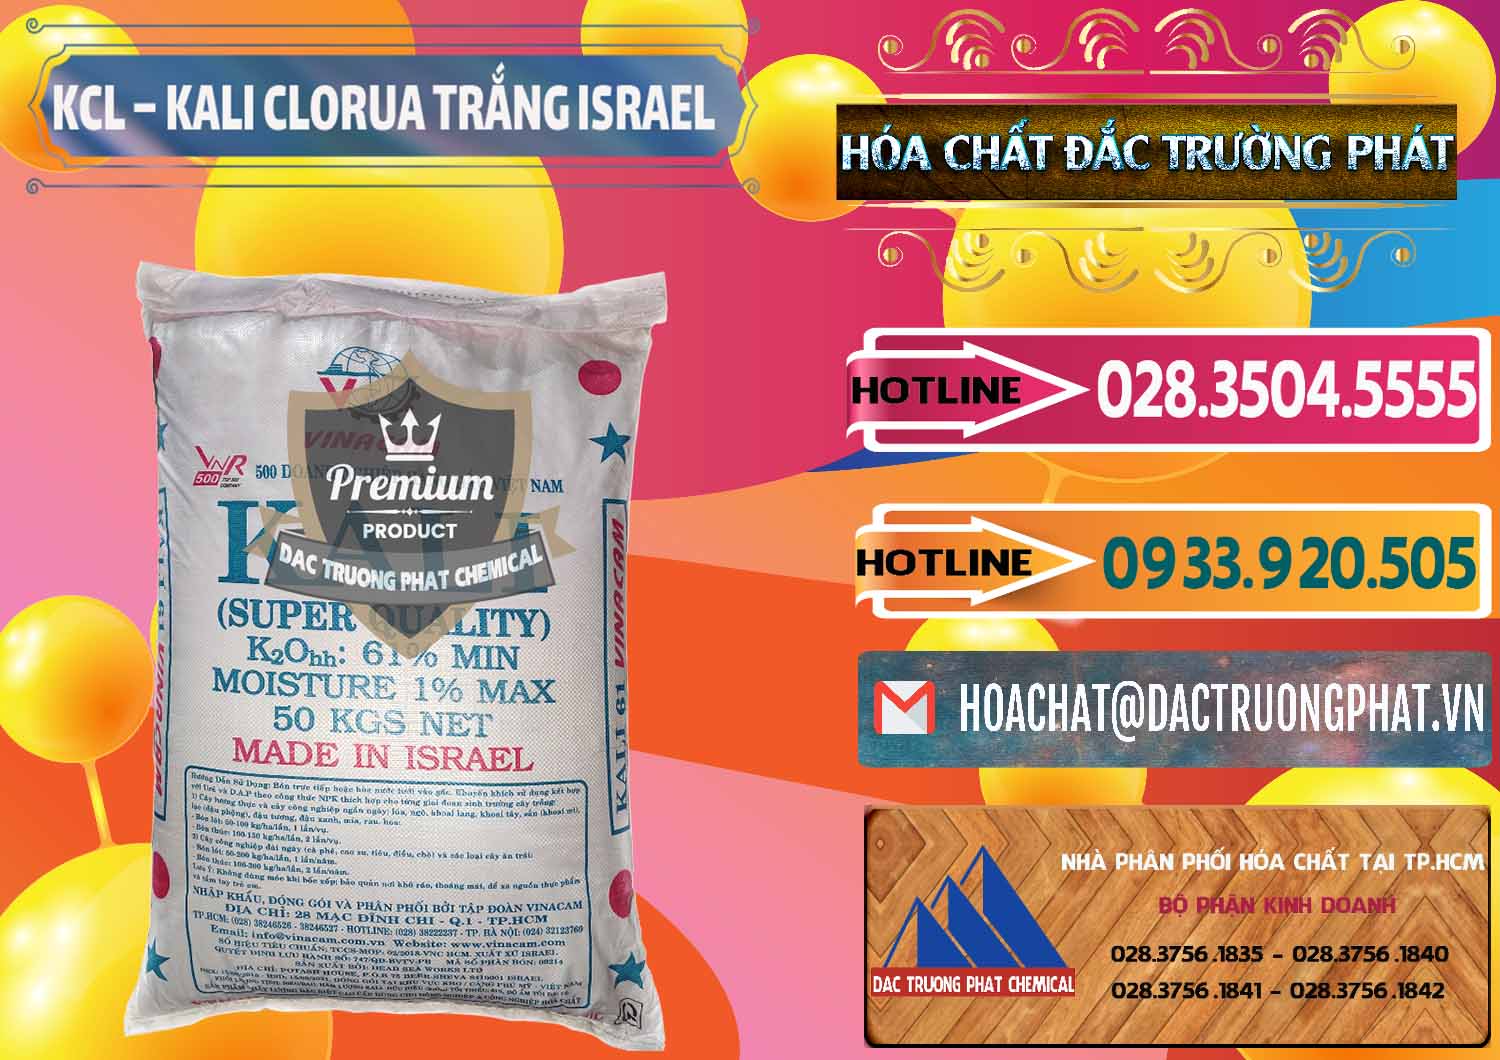 Công ty chuyên kinh doanh và bán KCL – Kali Clorua Trắng Israel - 0087 - Nơi chuyên nhập khẩu & cung cấp hóa chất tại TP.HCM - dactruongphat.vn